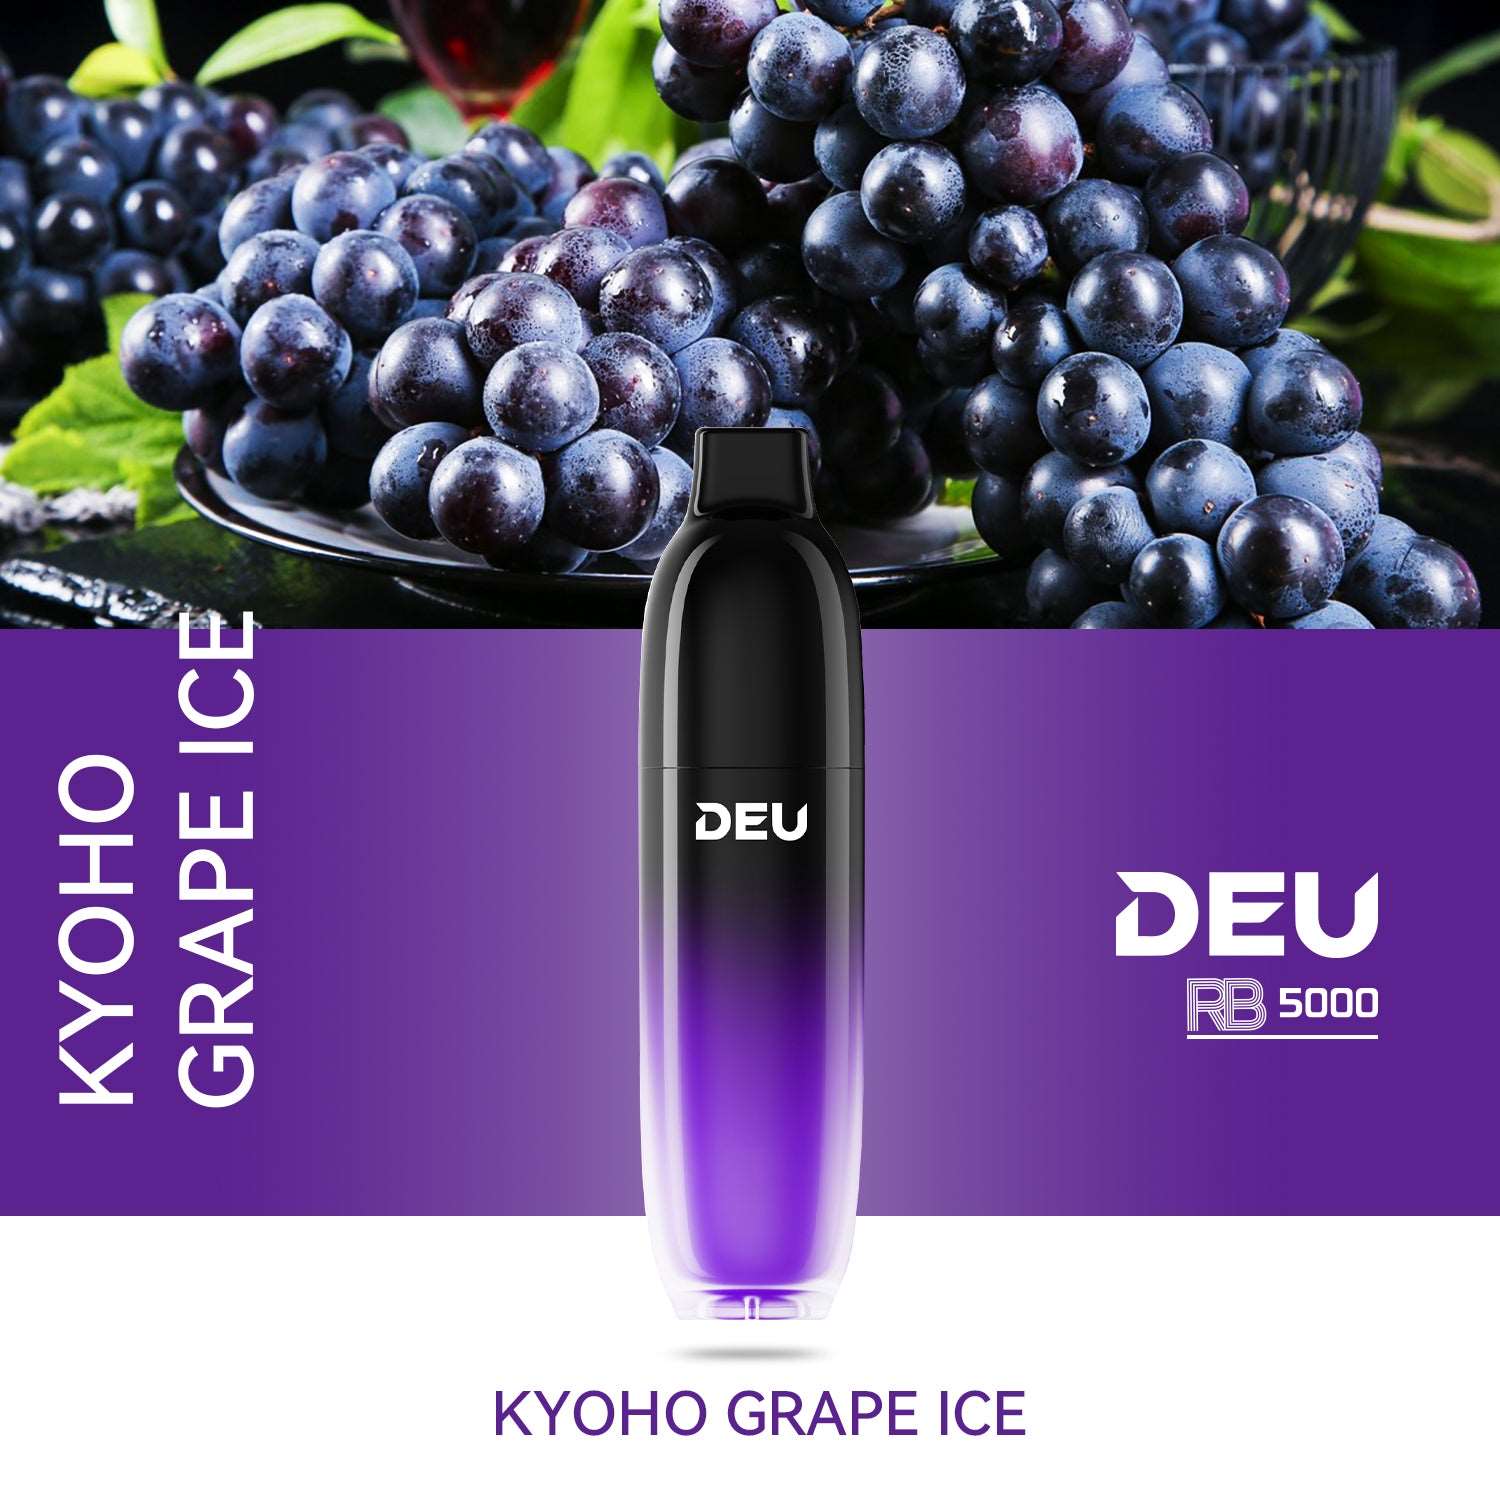 DEU RB5000 - Kyoho Grape